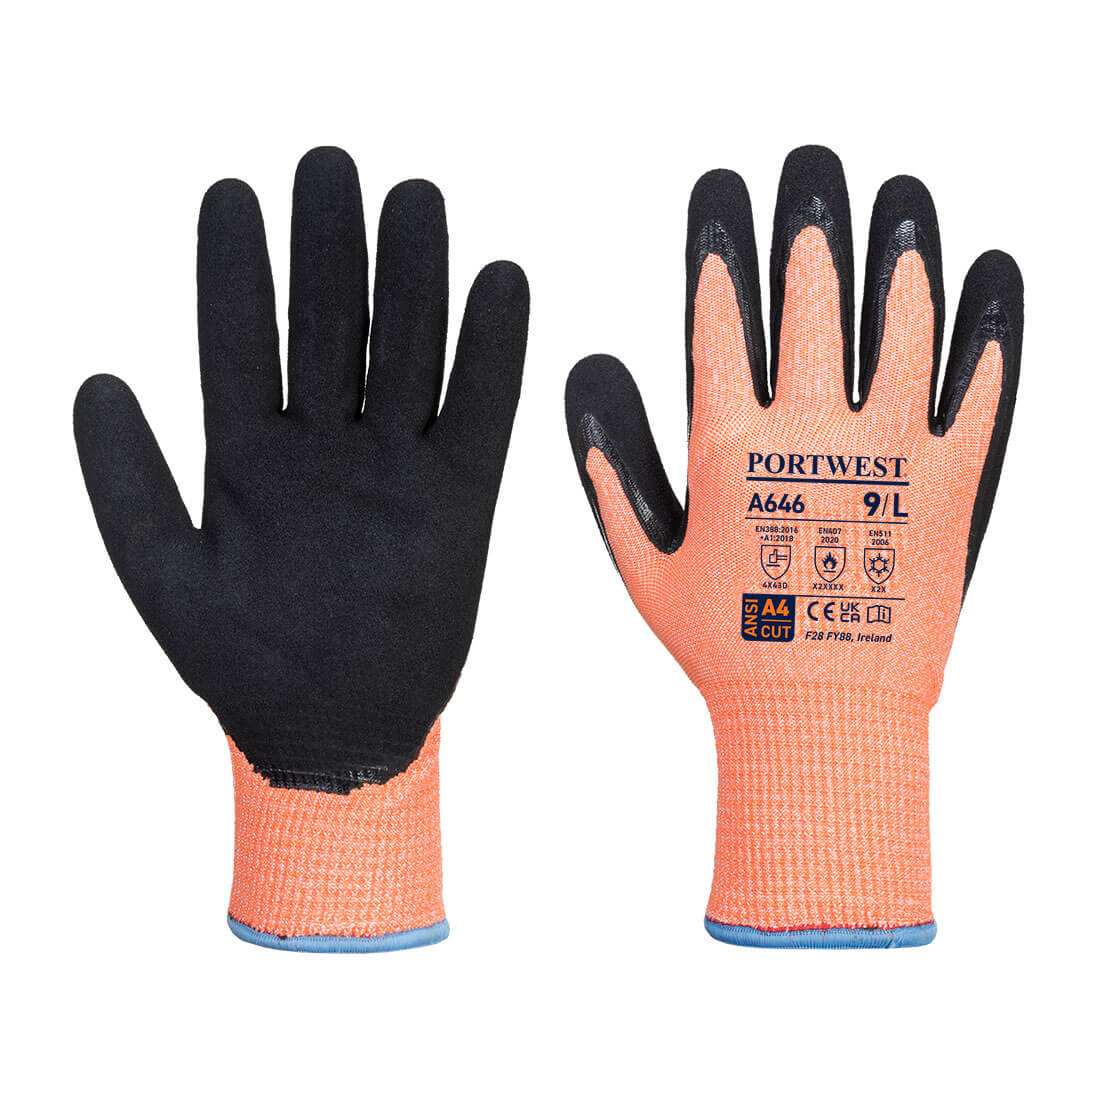 Vis-Tex Winter HR Cut Glove Nitrile  (A646)